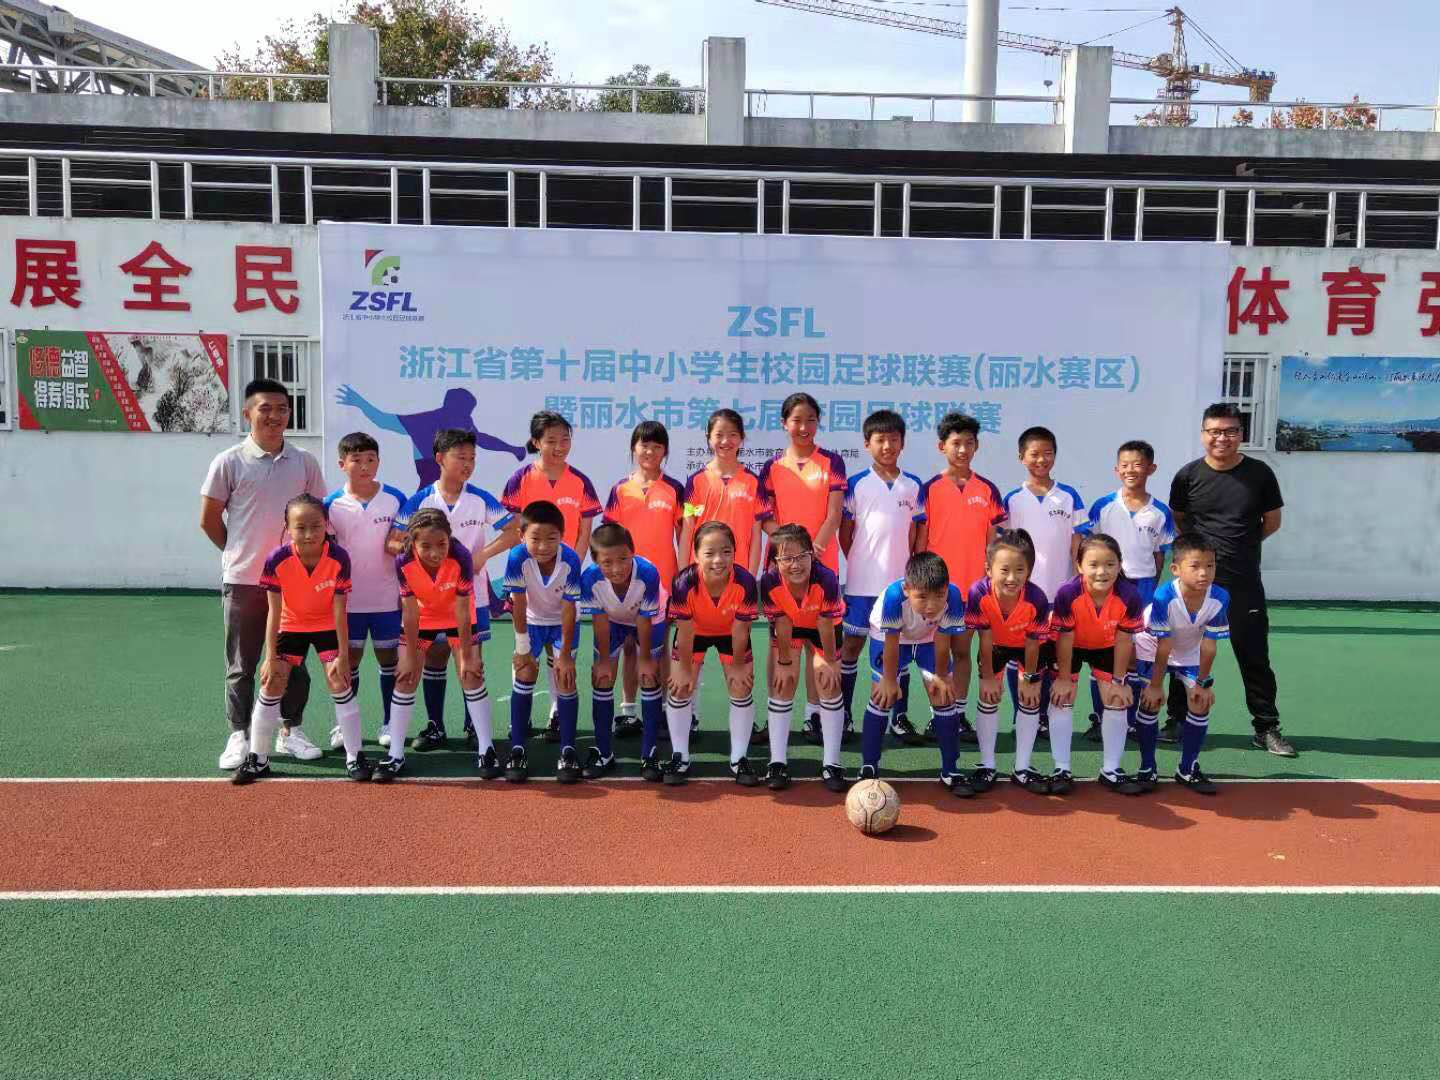 丽水市庆元县实验小学连续4年获县中小学足球比赛男女队双冠